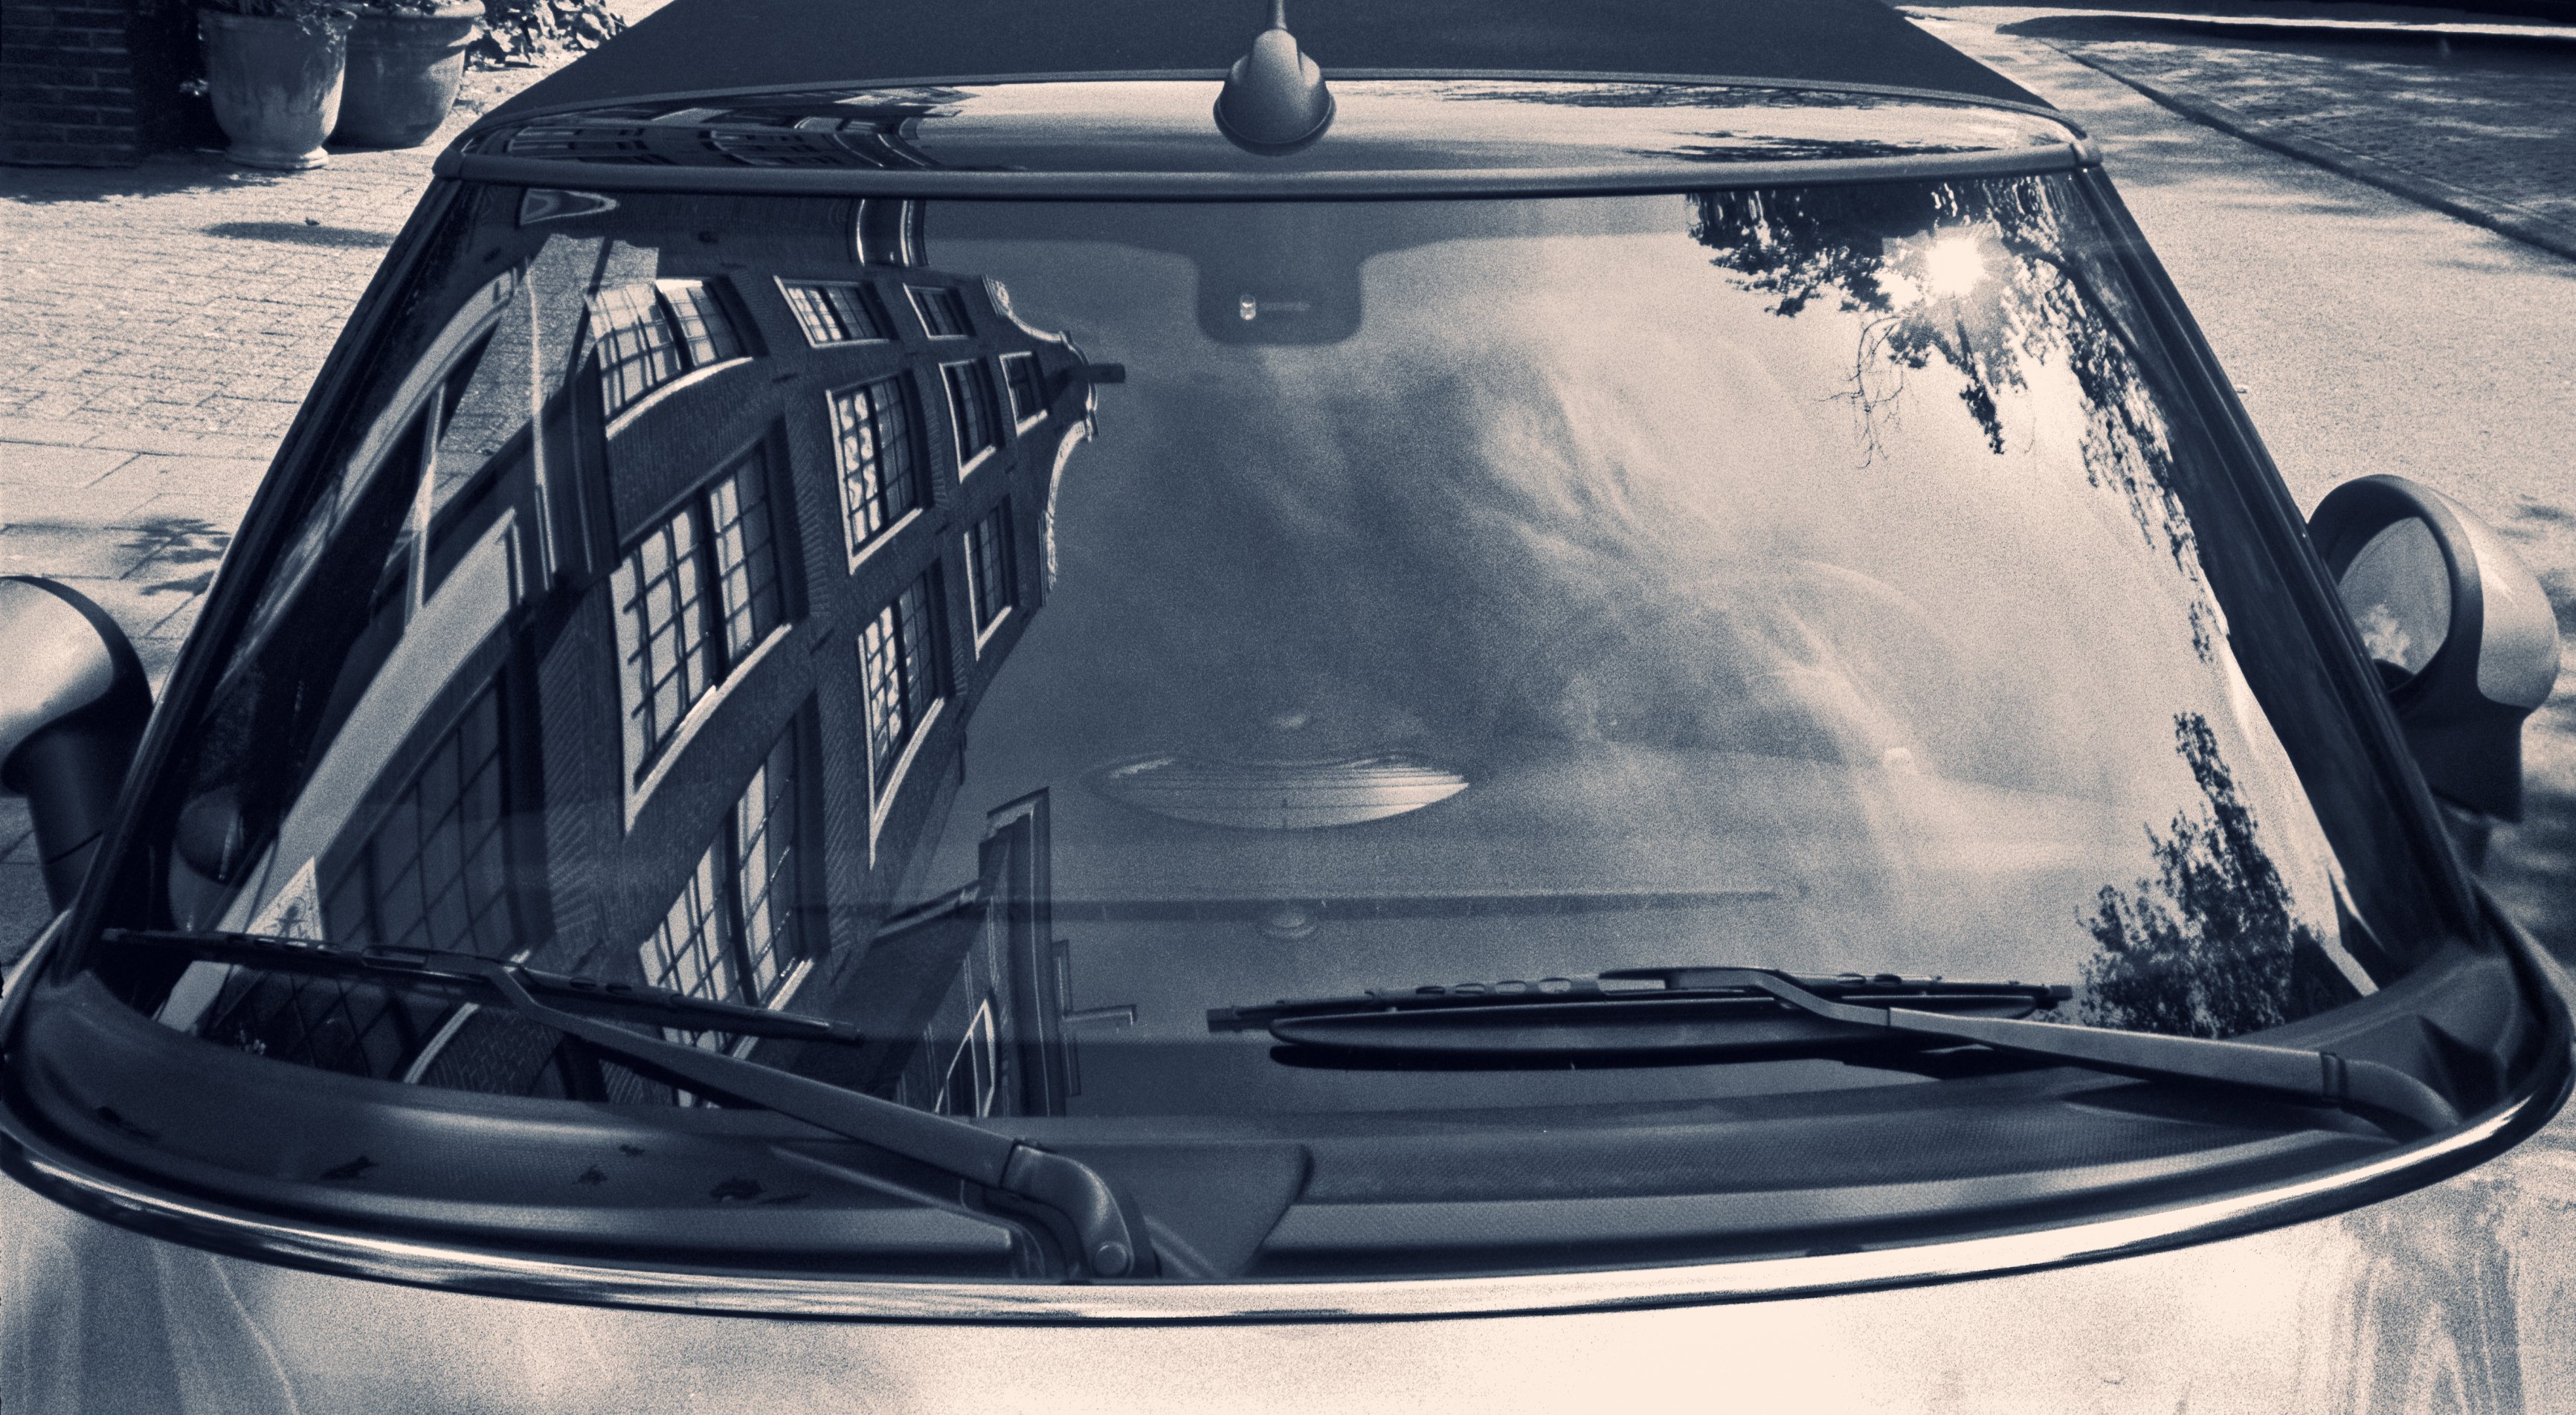 vidro frontal do carro mostrando as borrachas do para-brisa